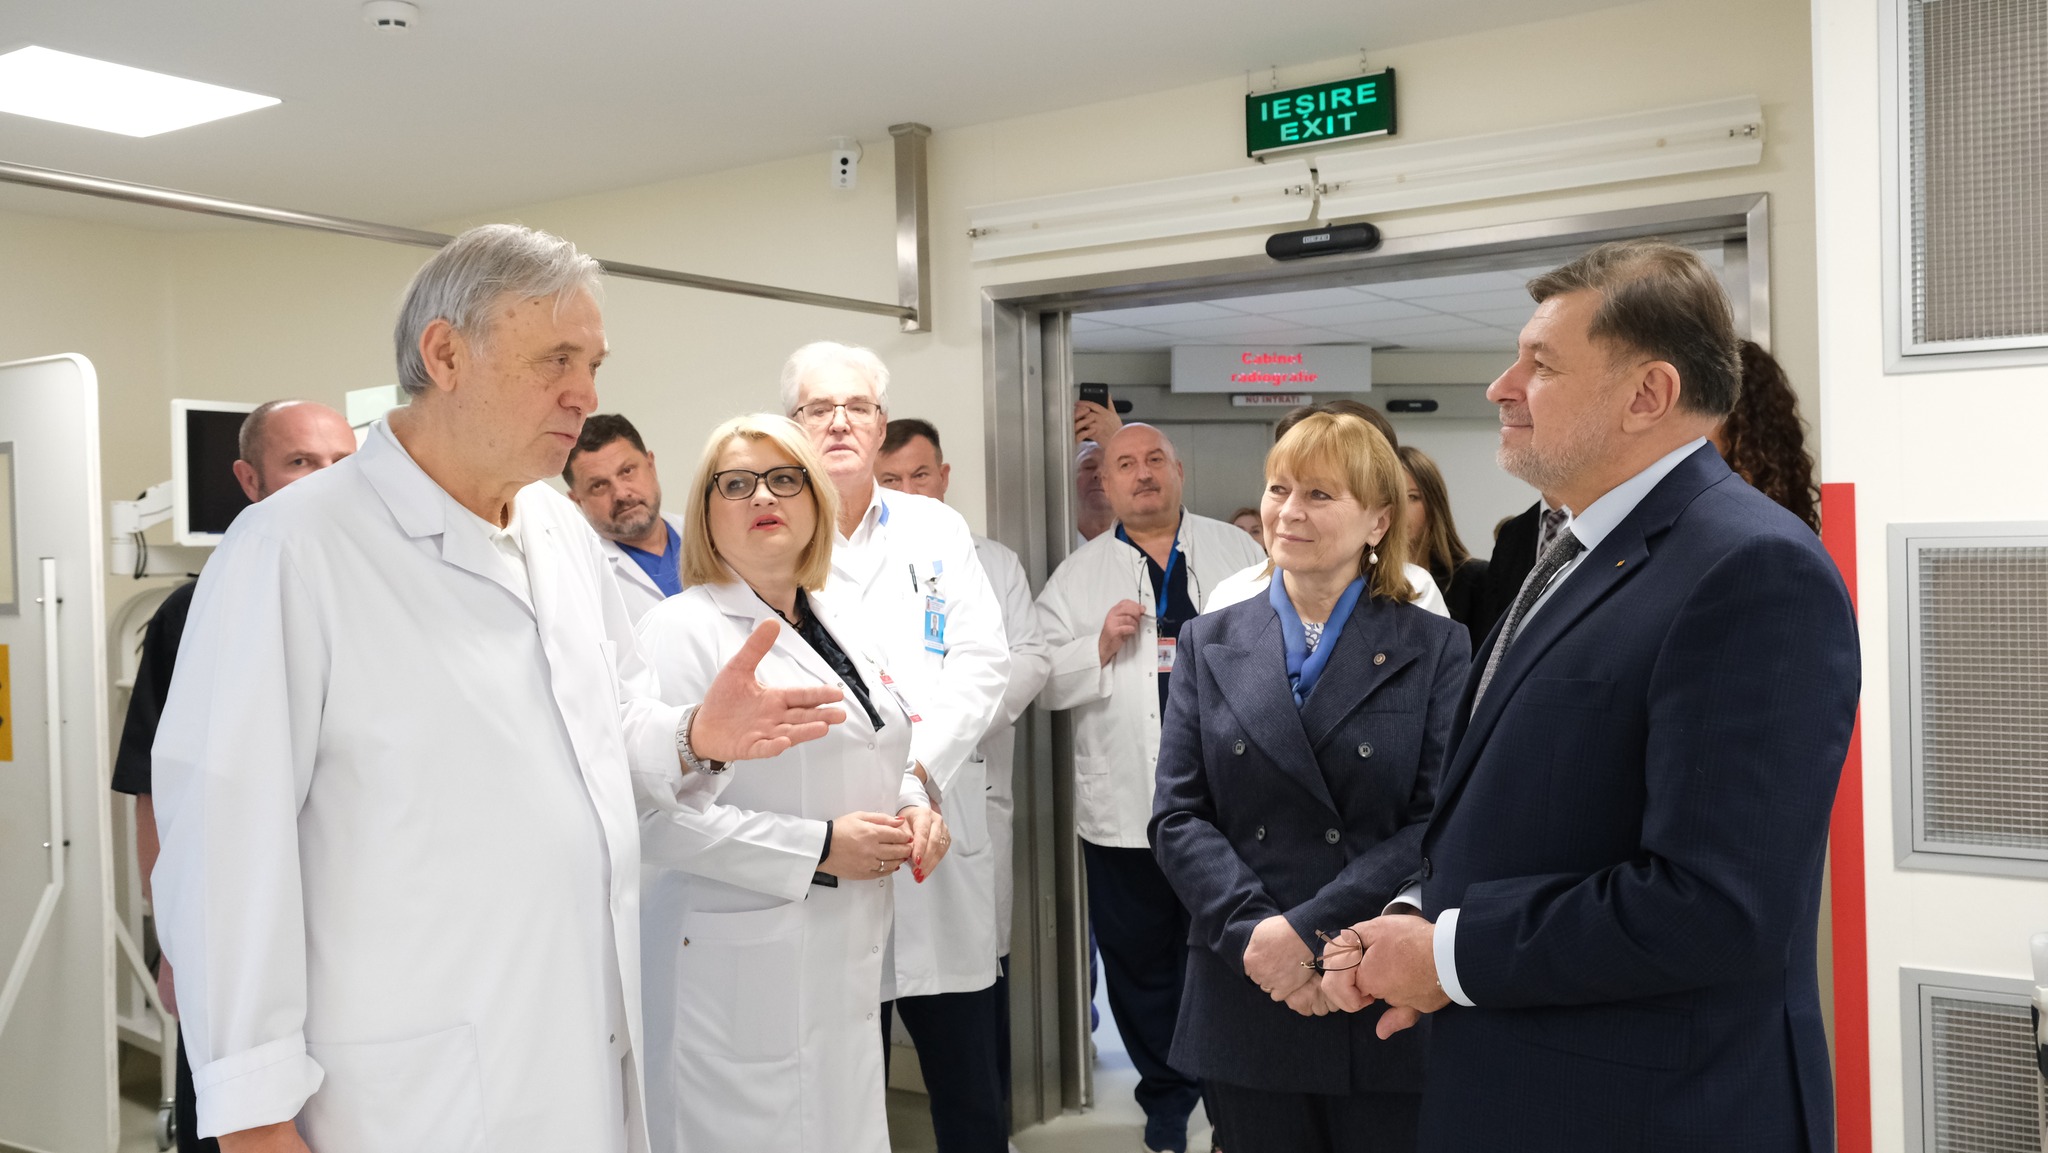 (ФОТО) Министр здравоохранения Молдовы Алла Немеренко встретилась со своим румынским коллегой. Что они обсудили?